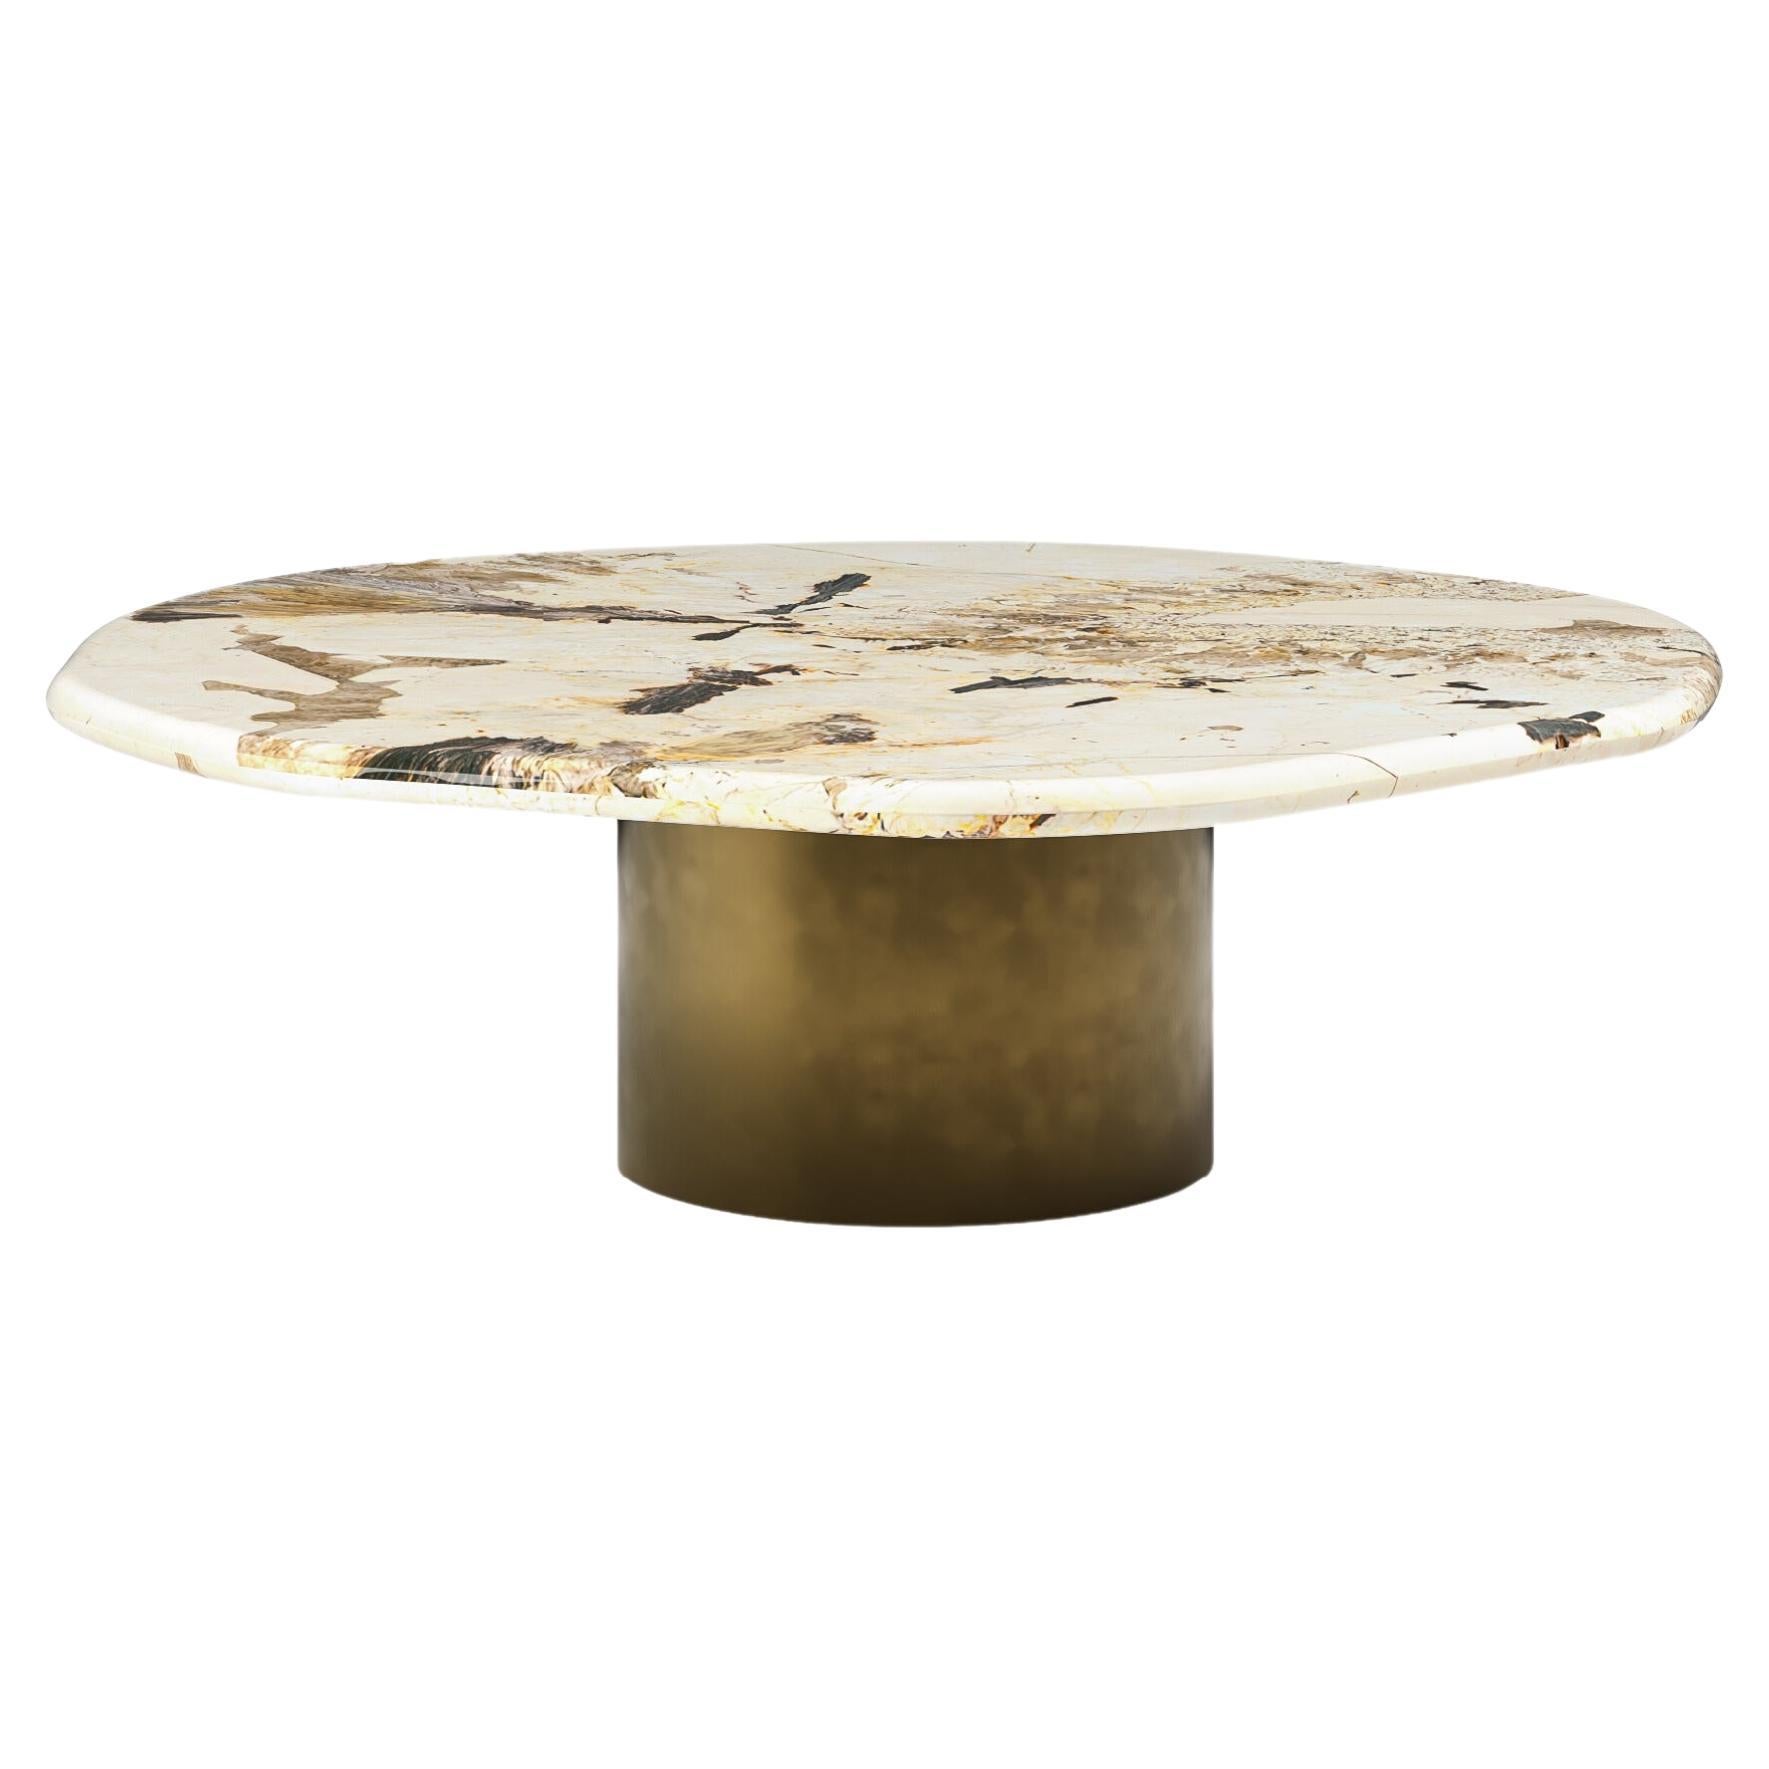 FORM(LA) table basse ronde Lago 36L x 36W x 14H Quartzite et bronze antique en vente